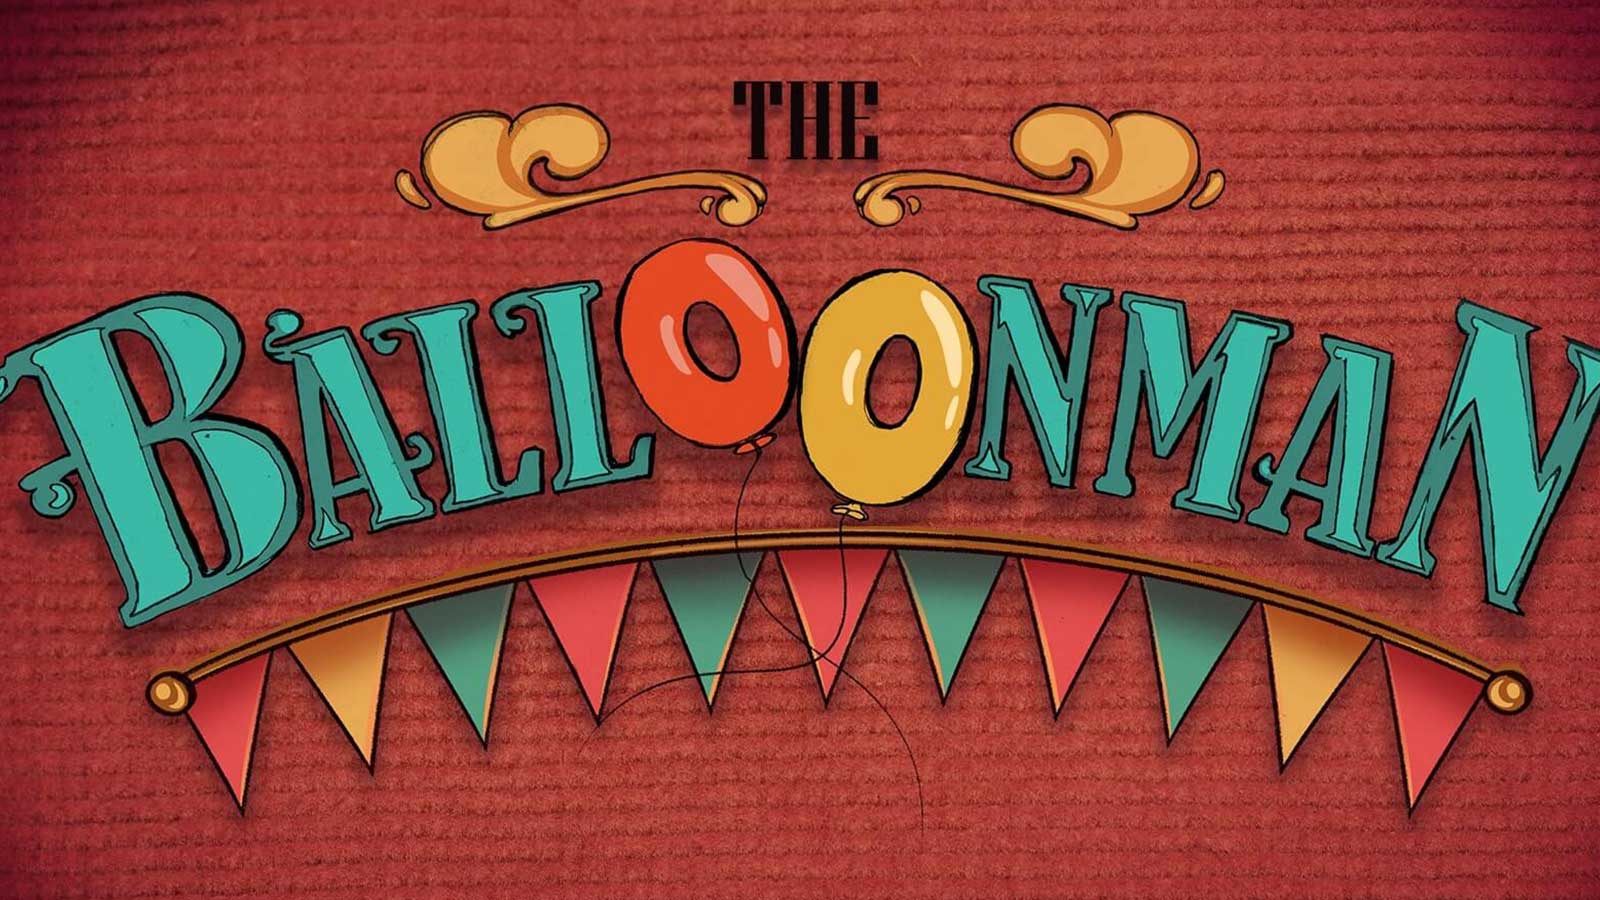 La tarjeta de presentación para la animación "The Balloonman"